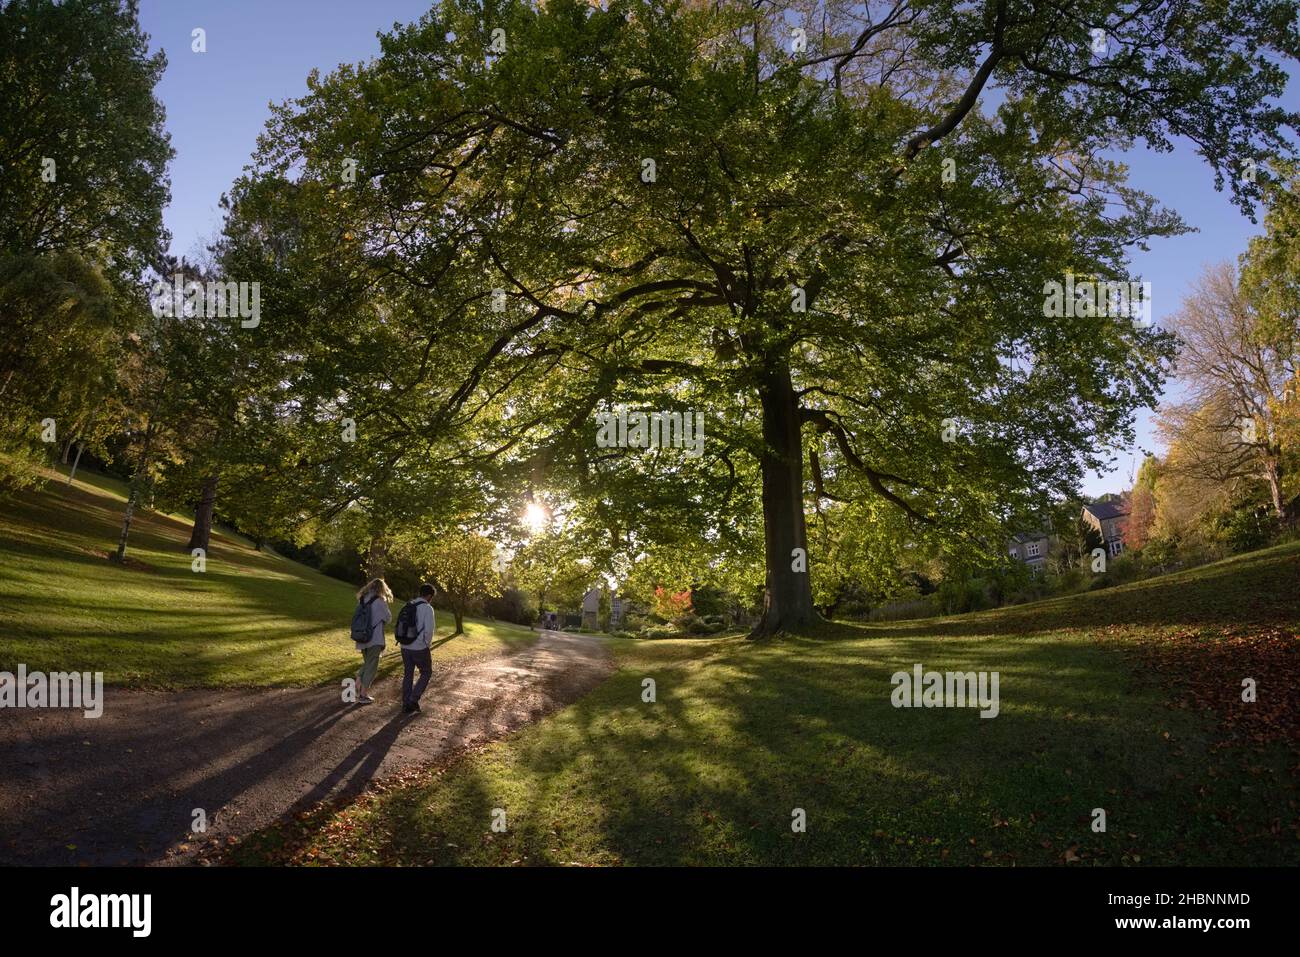 Sheffield, Royaume-Uni, 21st octobre 2021 : un jeune homme et une jeune femme se prominnent au soleil près de l'entrée de la route botanique des jardins botaniques de sheffield Banque D'Images